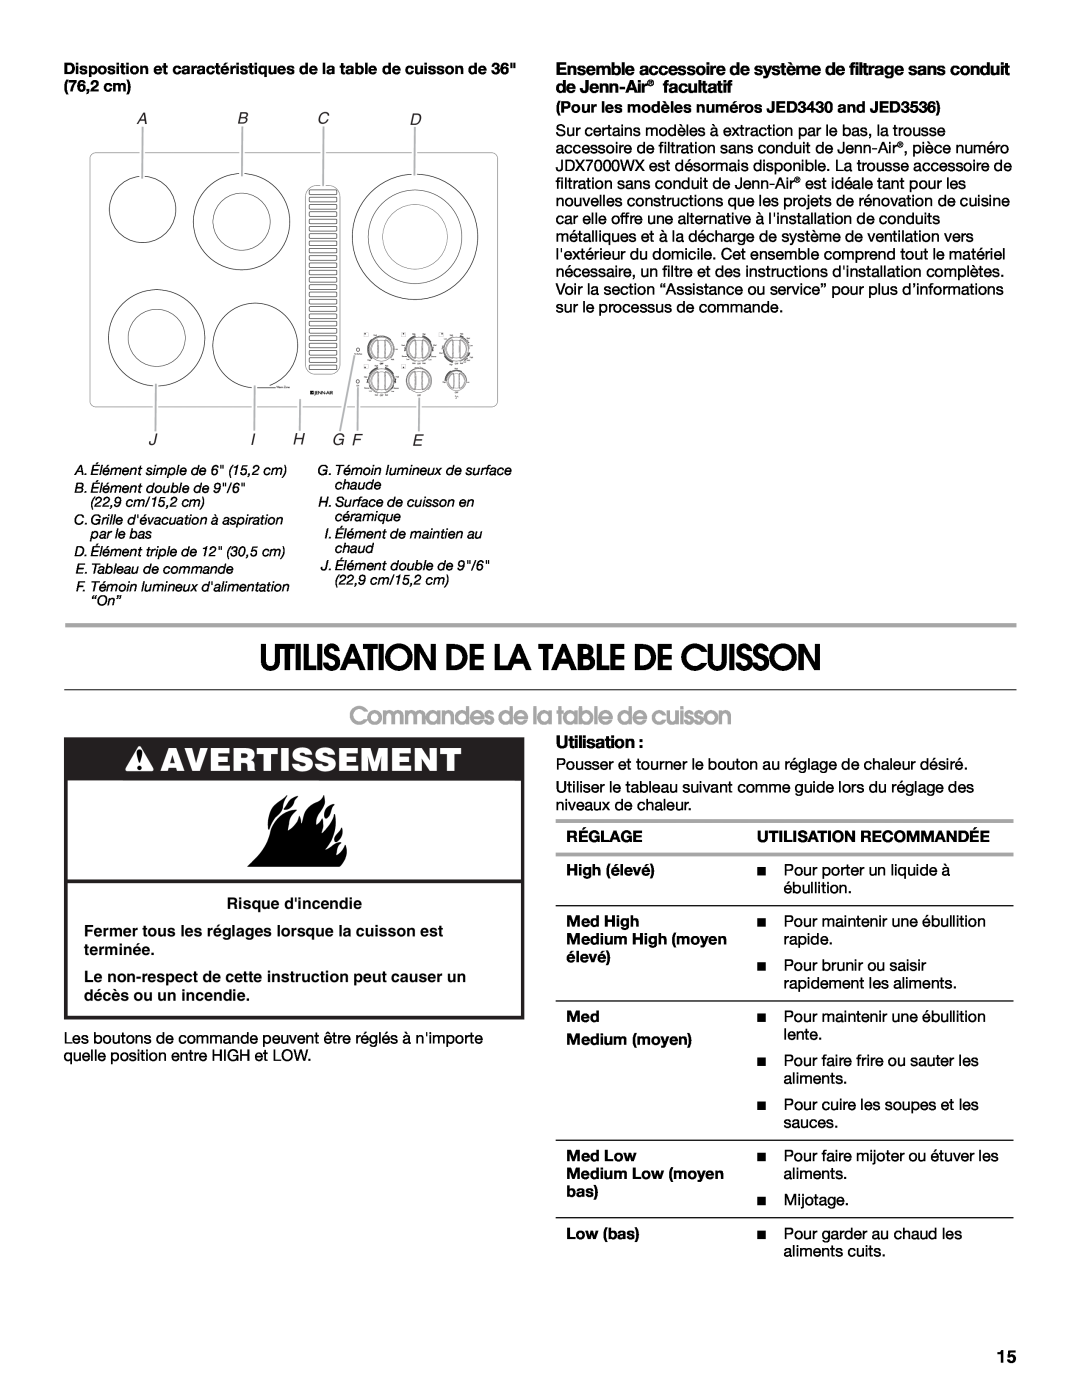 Jenn-Air W10197056B Utilisation De La Table De Cuisson, Avertissement, Commandes de la table de cuisson, Ab Cd, Ji H G F E 